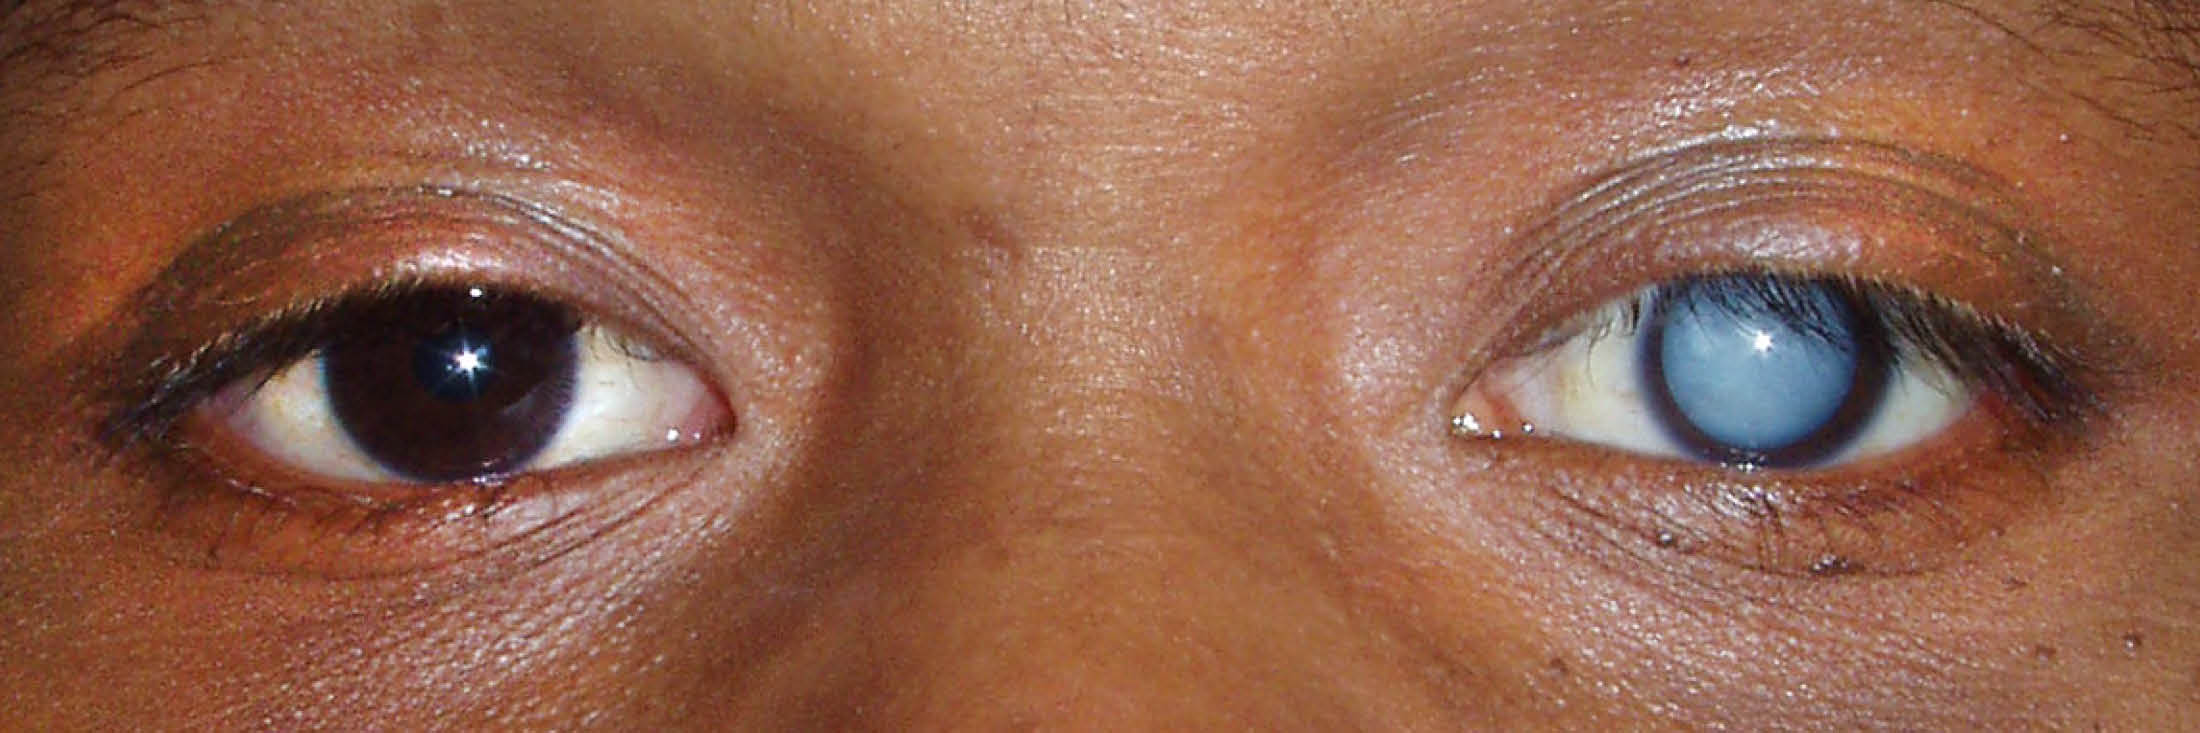 Катаракта слезится глаз. Тетаническая катаракта. Старческая(сенильная)катаракта. Дерматогенная катаракта.